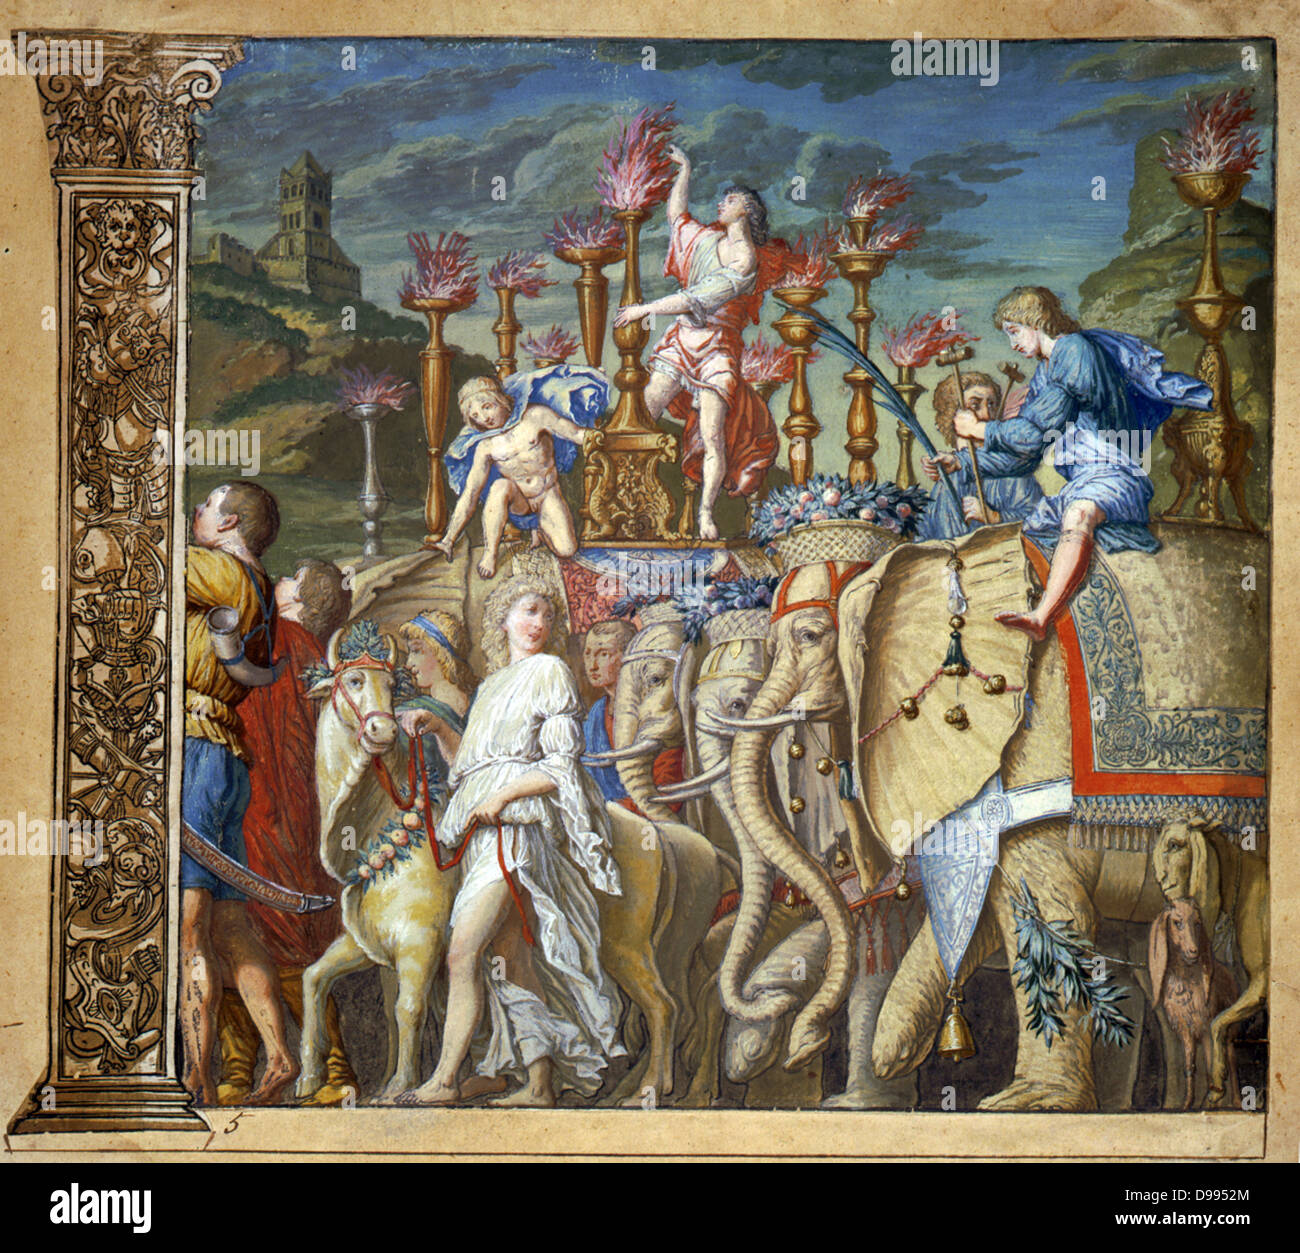 Le triomphe de Jules César, Andrea Andreani (1540-1623) Graveur sur bois italien. Planche 5 de son 'Triumphus Caesari' c1598, après Andrea Mantegna (1431-1506), artiste italien. Des éléphants en cortège triomphal. Banque D'Images